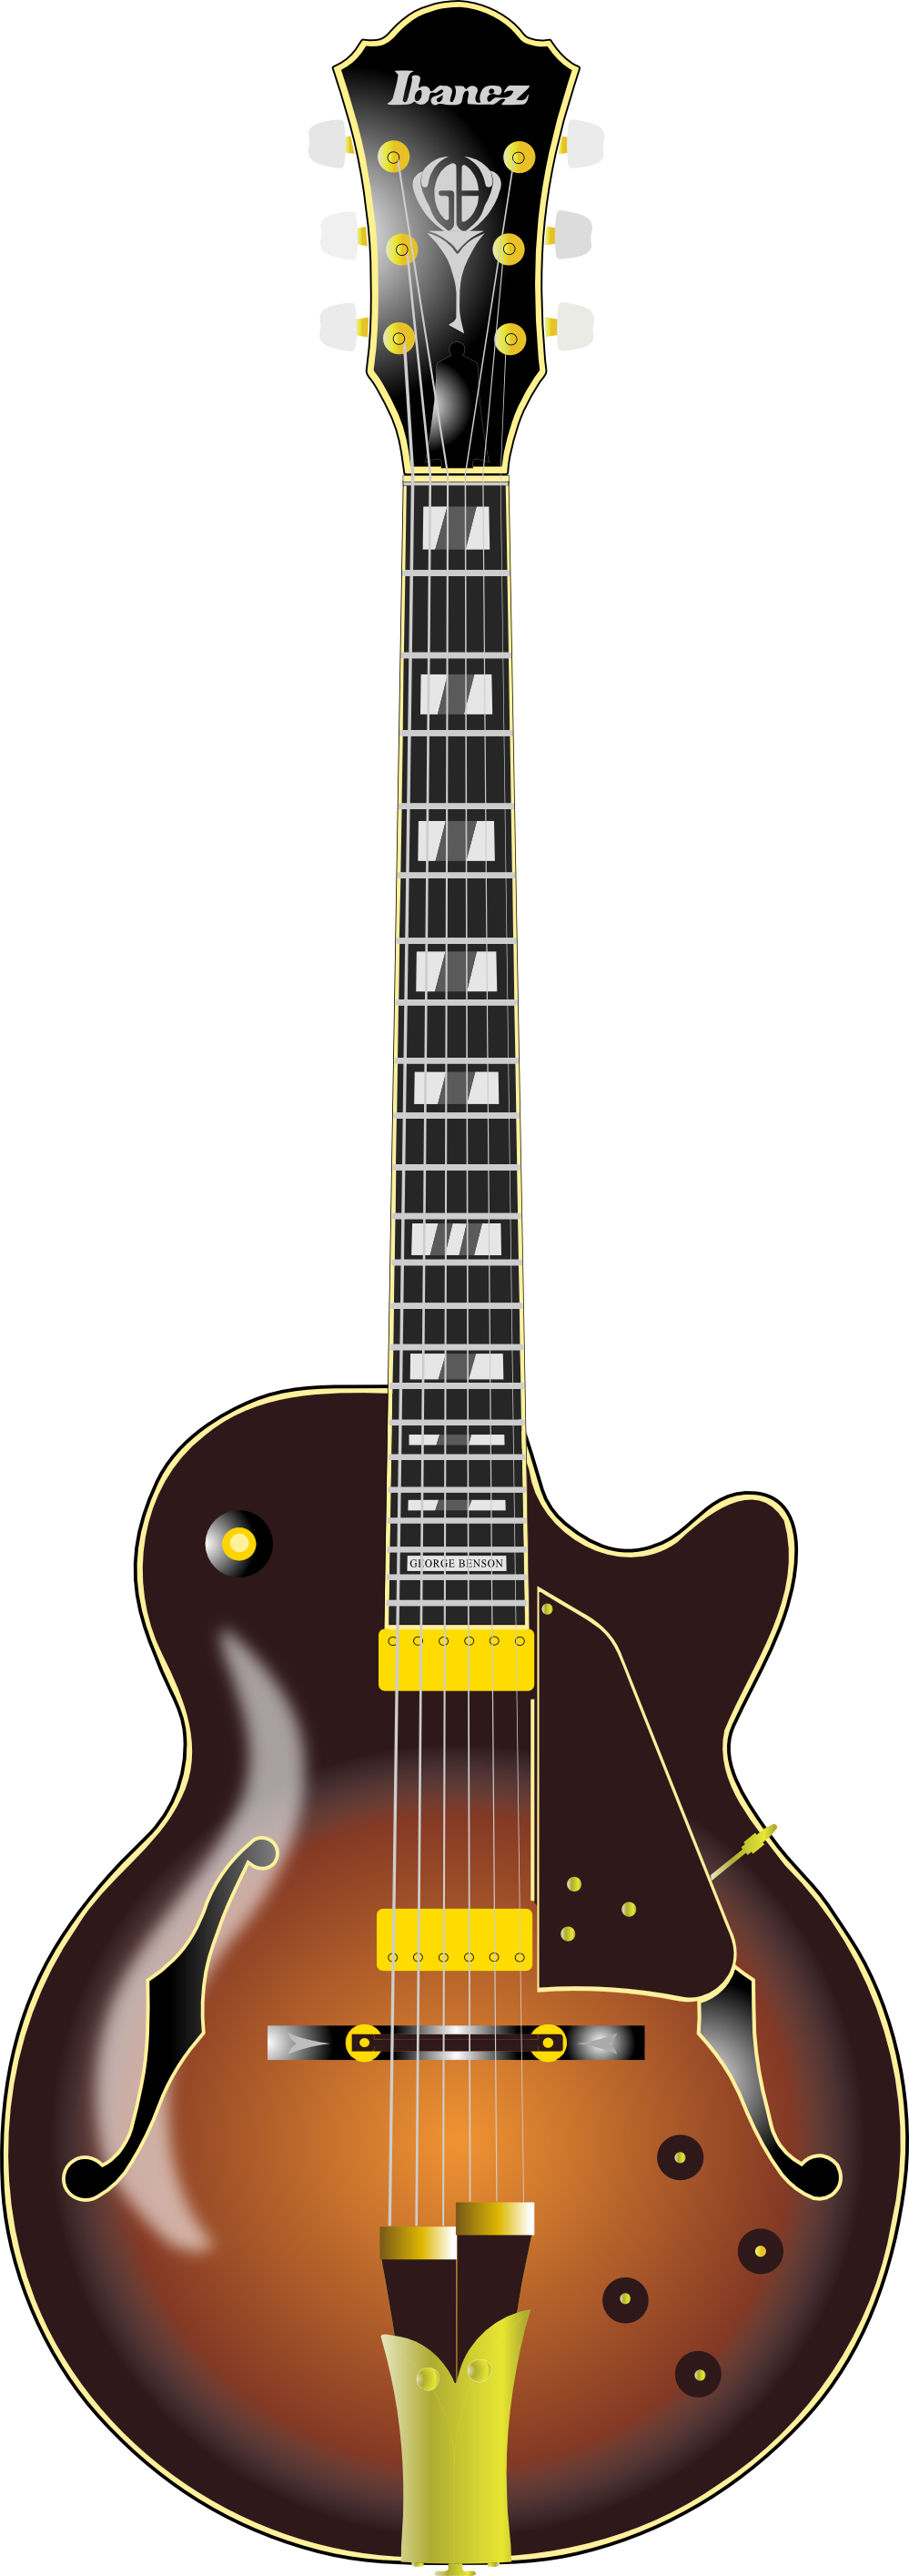 clipart skull guitar